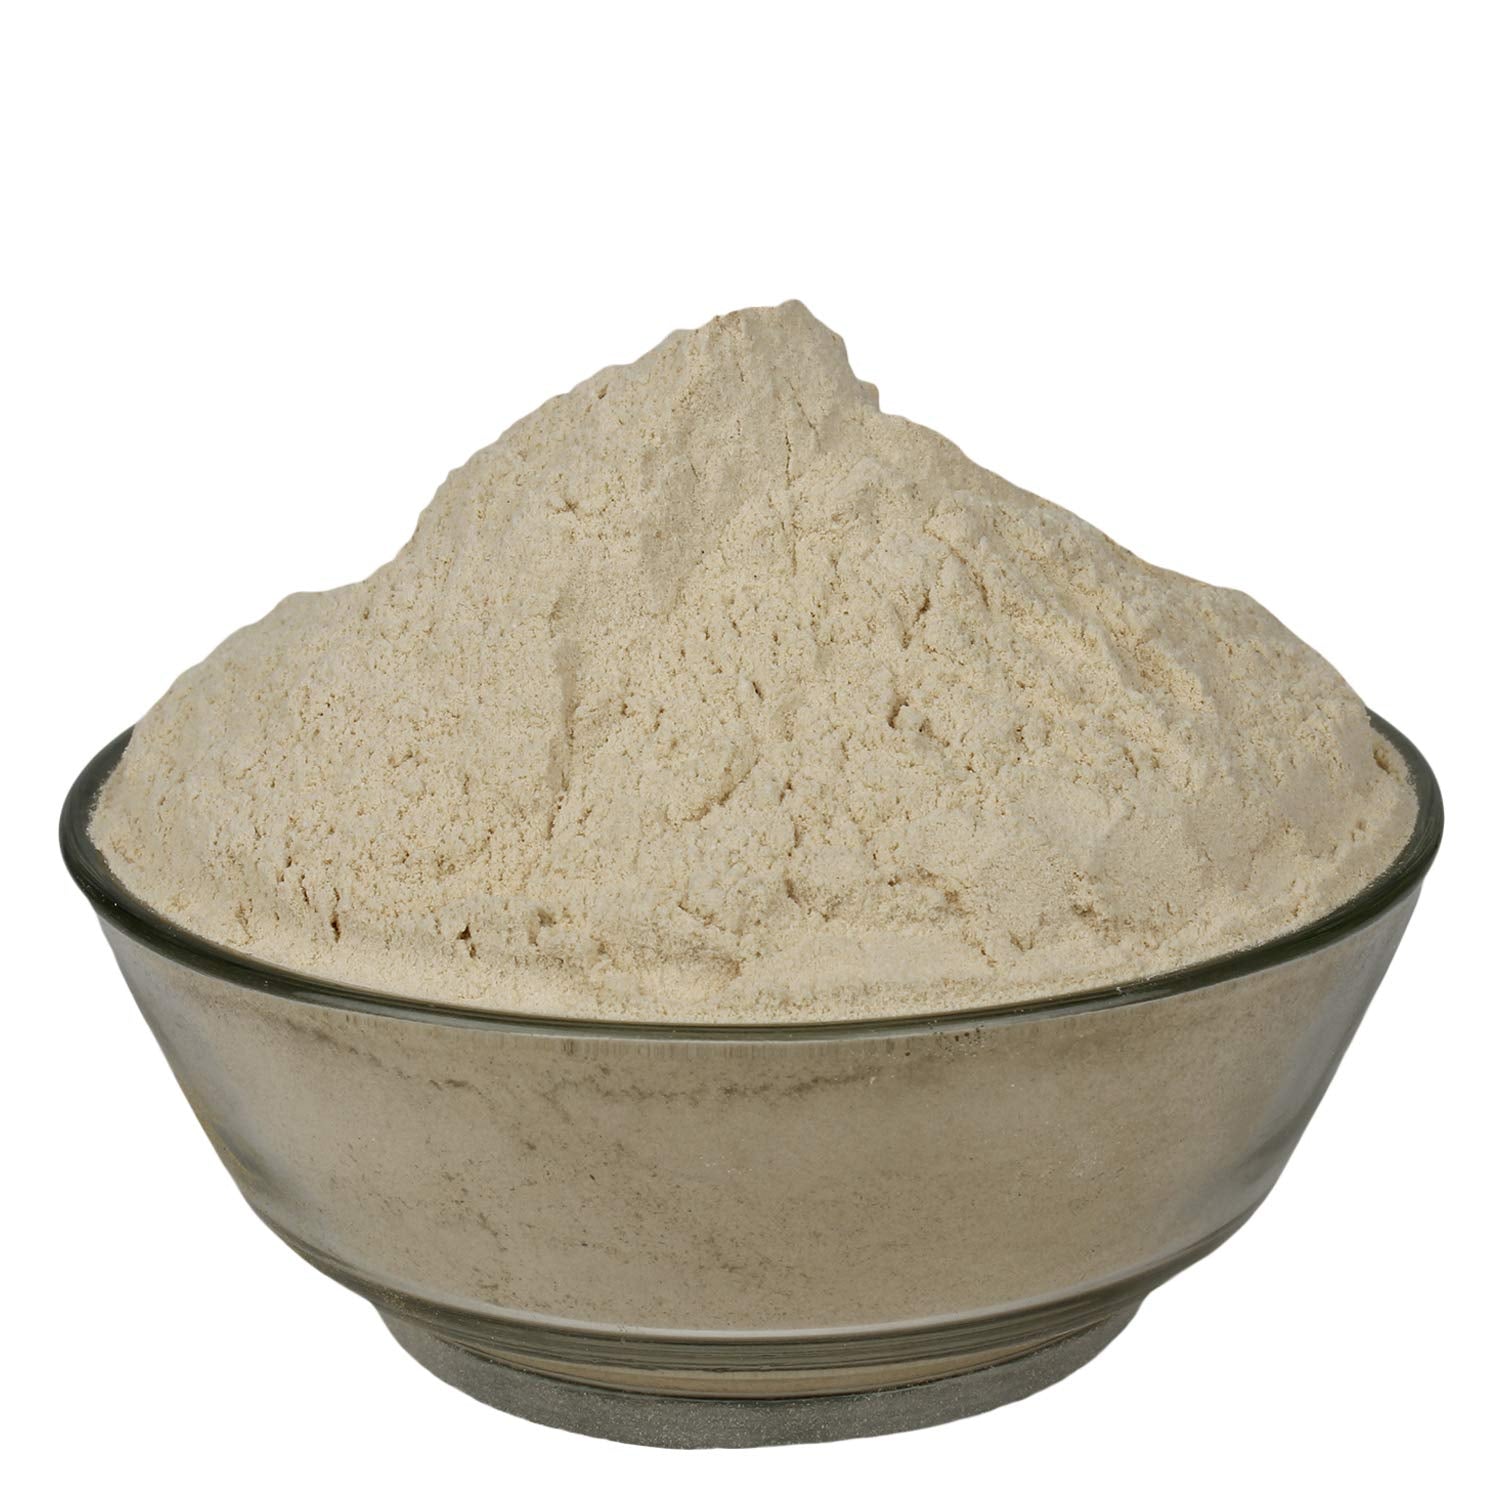 YUVIKA Musli Safed Powder - Chlorophytum Borivilianum - White Musli Powder